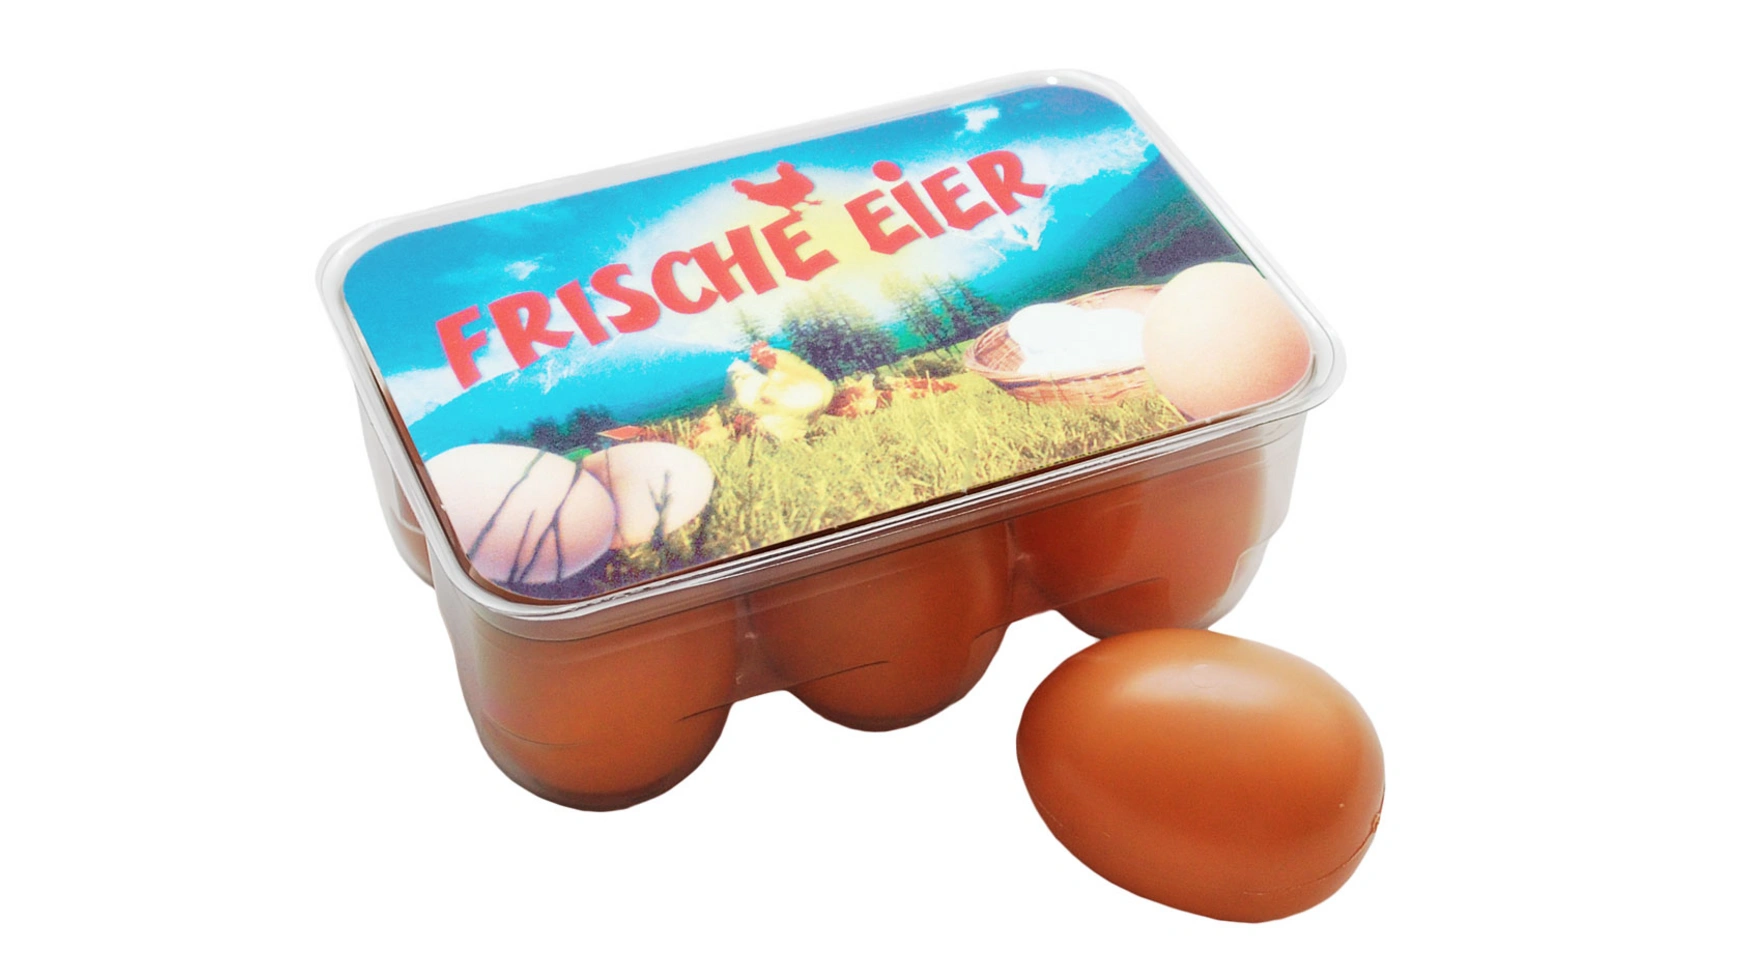 6 пластиковых яиц в коробочке для яиц Tanner